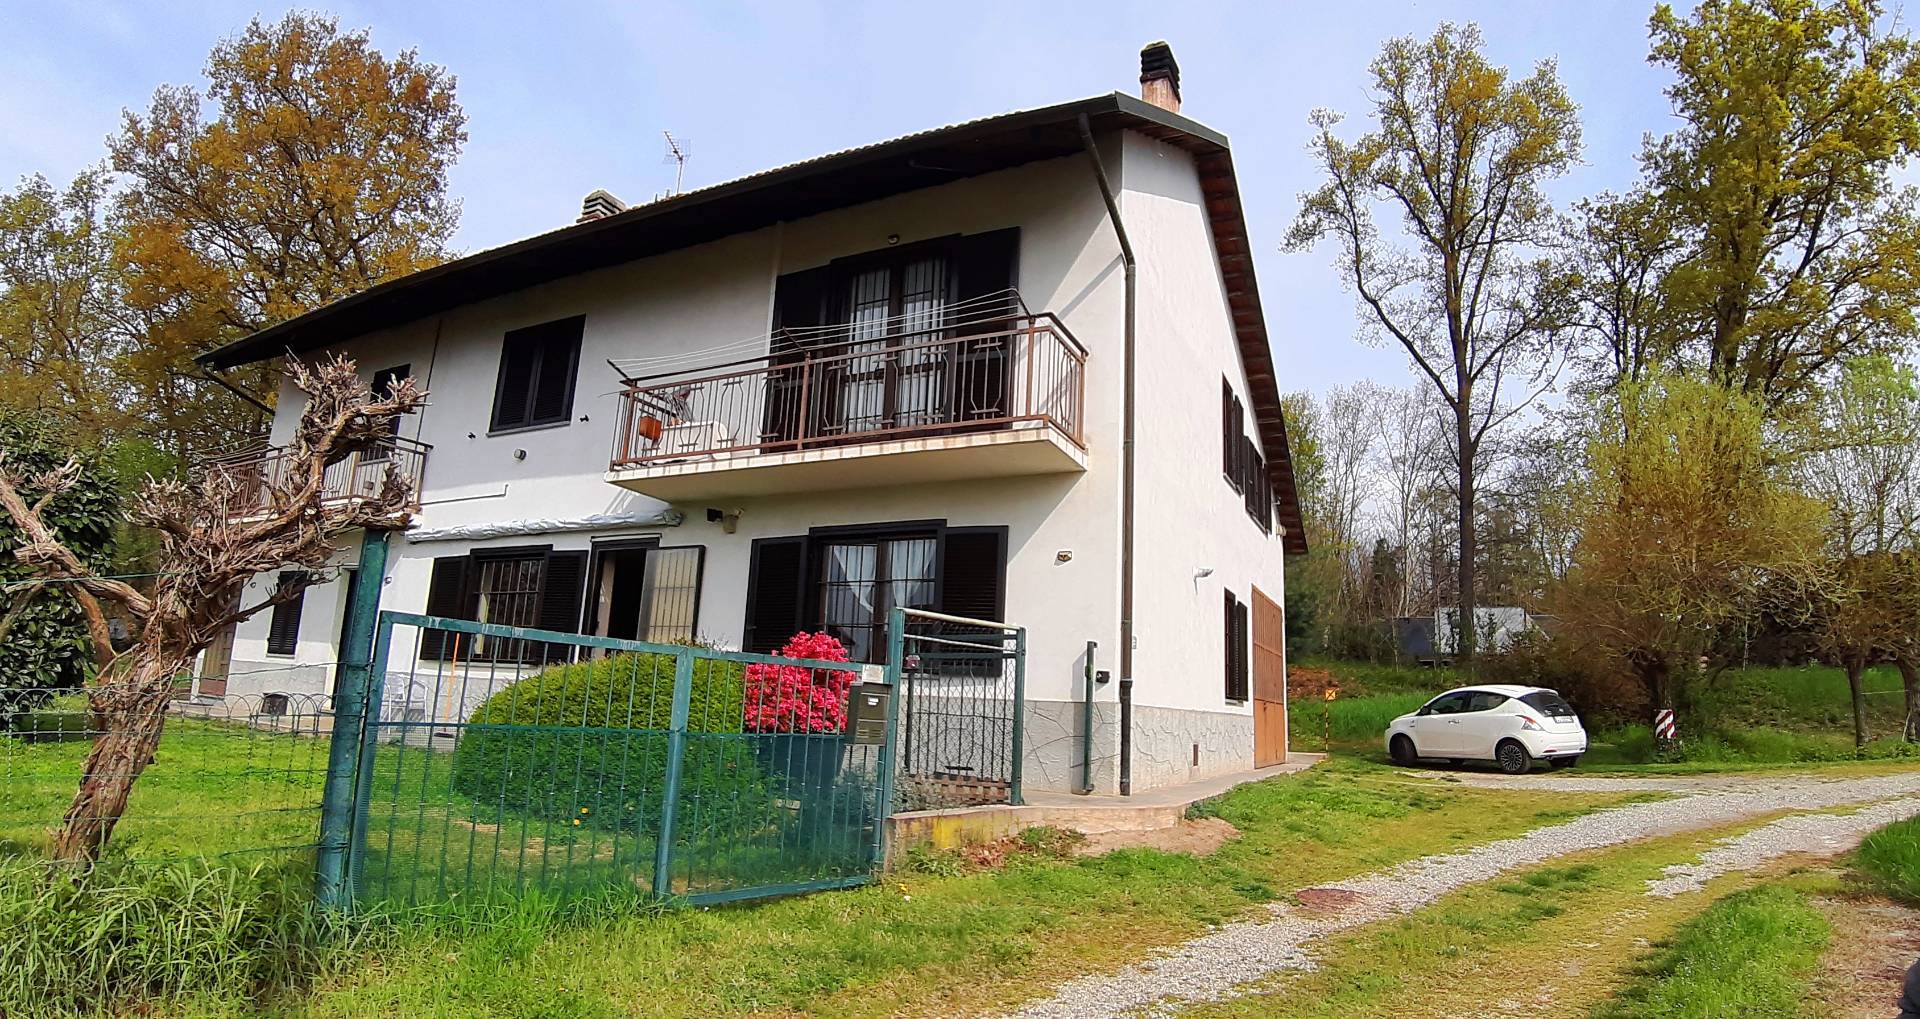 Villa in vendita a San Francesco al Campo, 13 locali, zona Località: Semiperiferica, prezzo € 200.000 | PortaleAgenzieImmobiliari.it